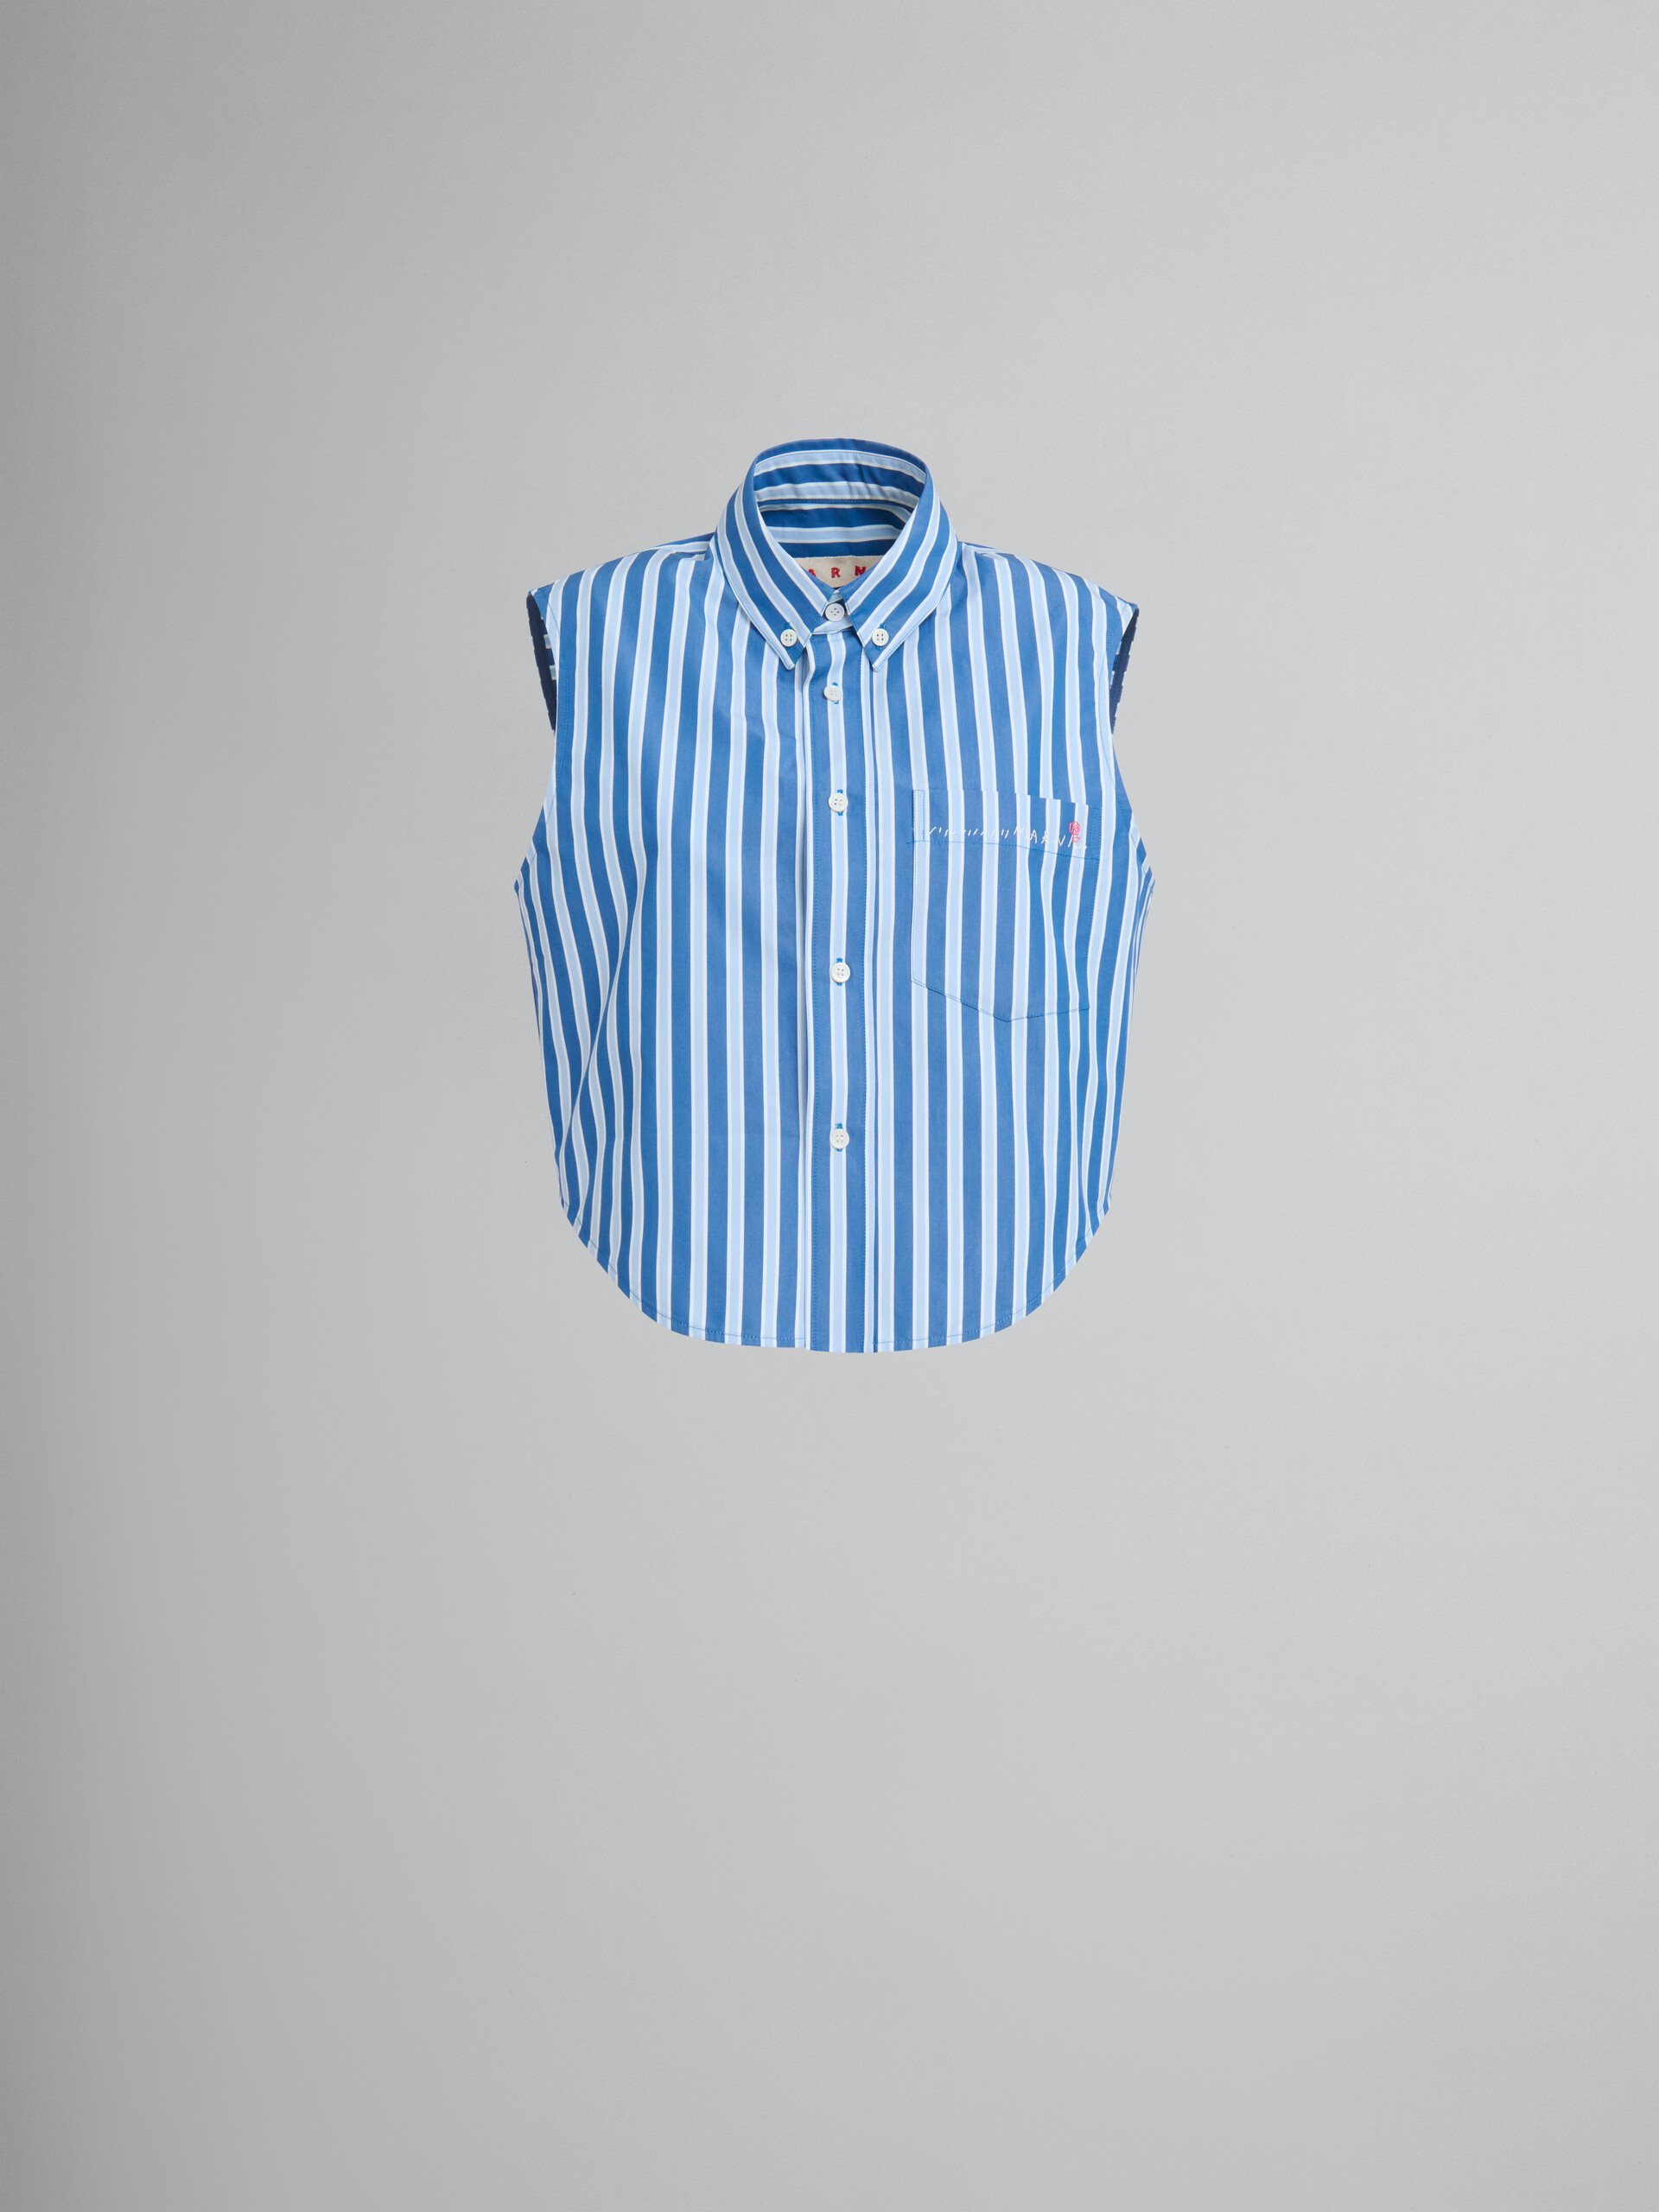 Camicia smanicata in cotone biologico a righe bianche e blu - Camicie - Image 1